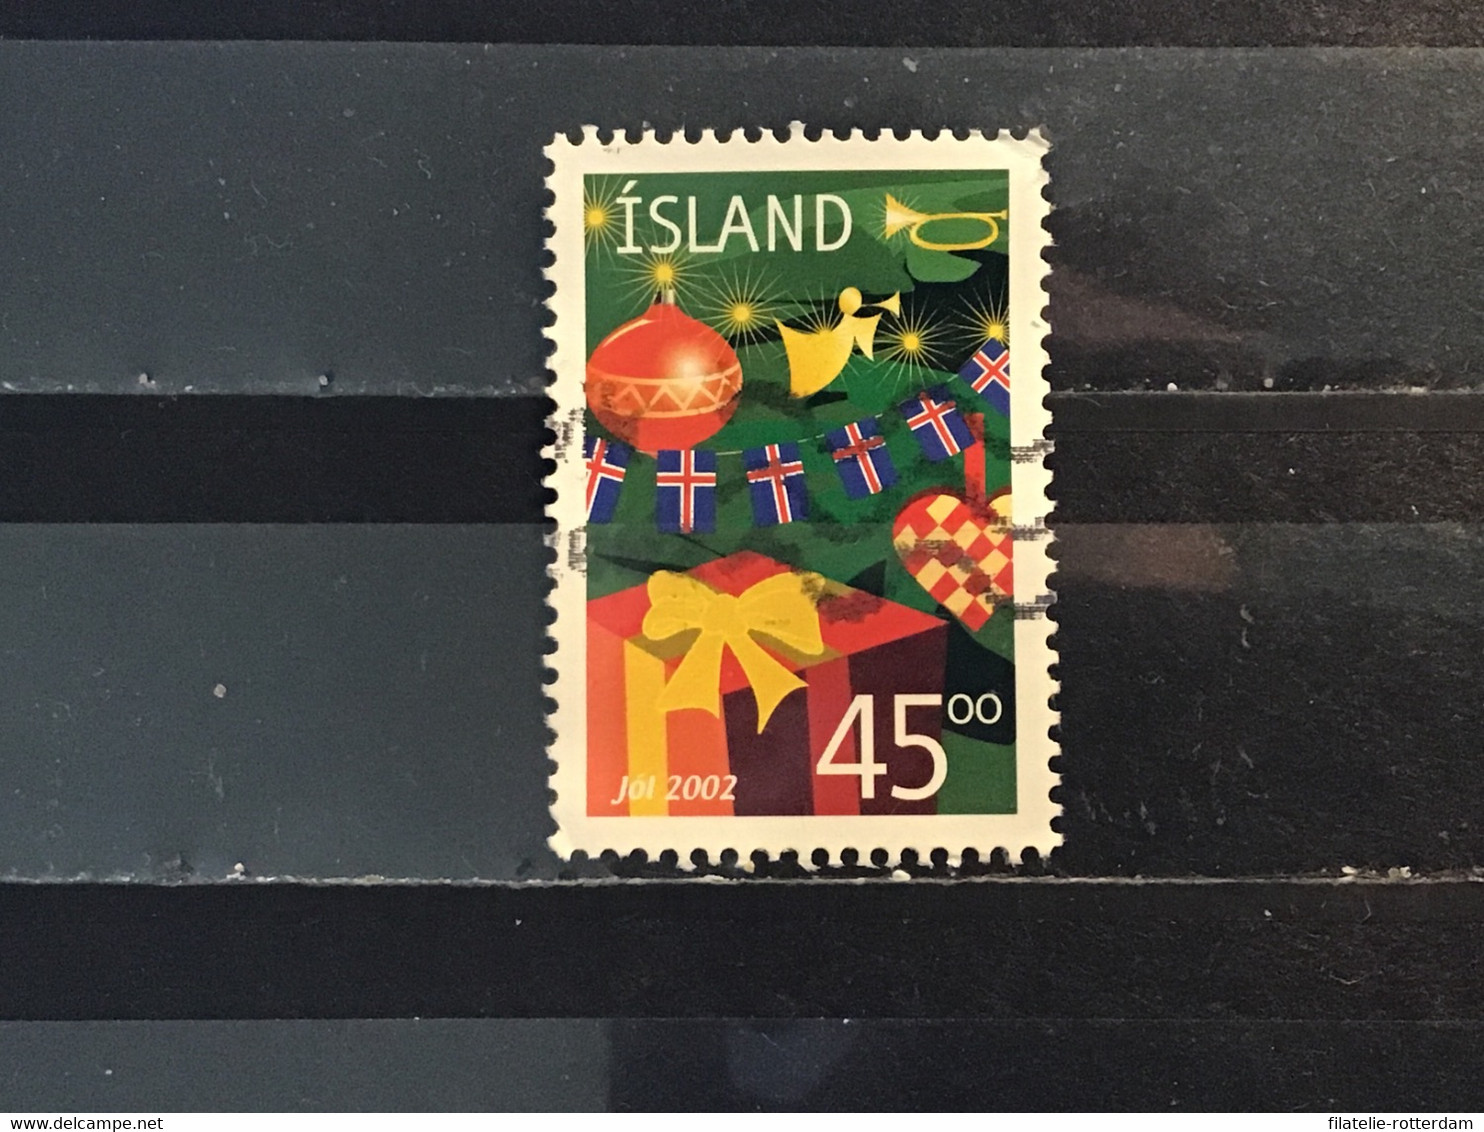 IJsland / Iceland - Kerstmis (45) 2002 - Gebruikt